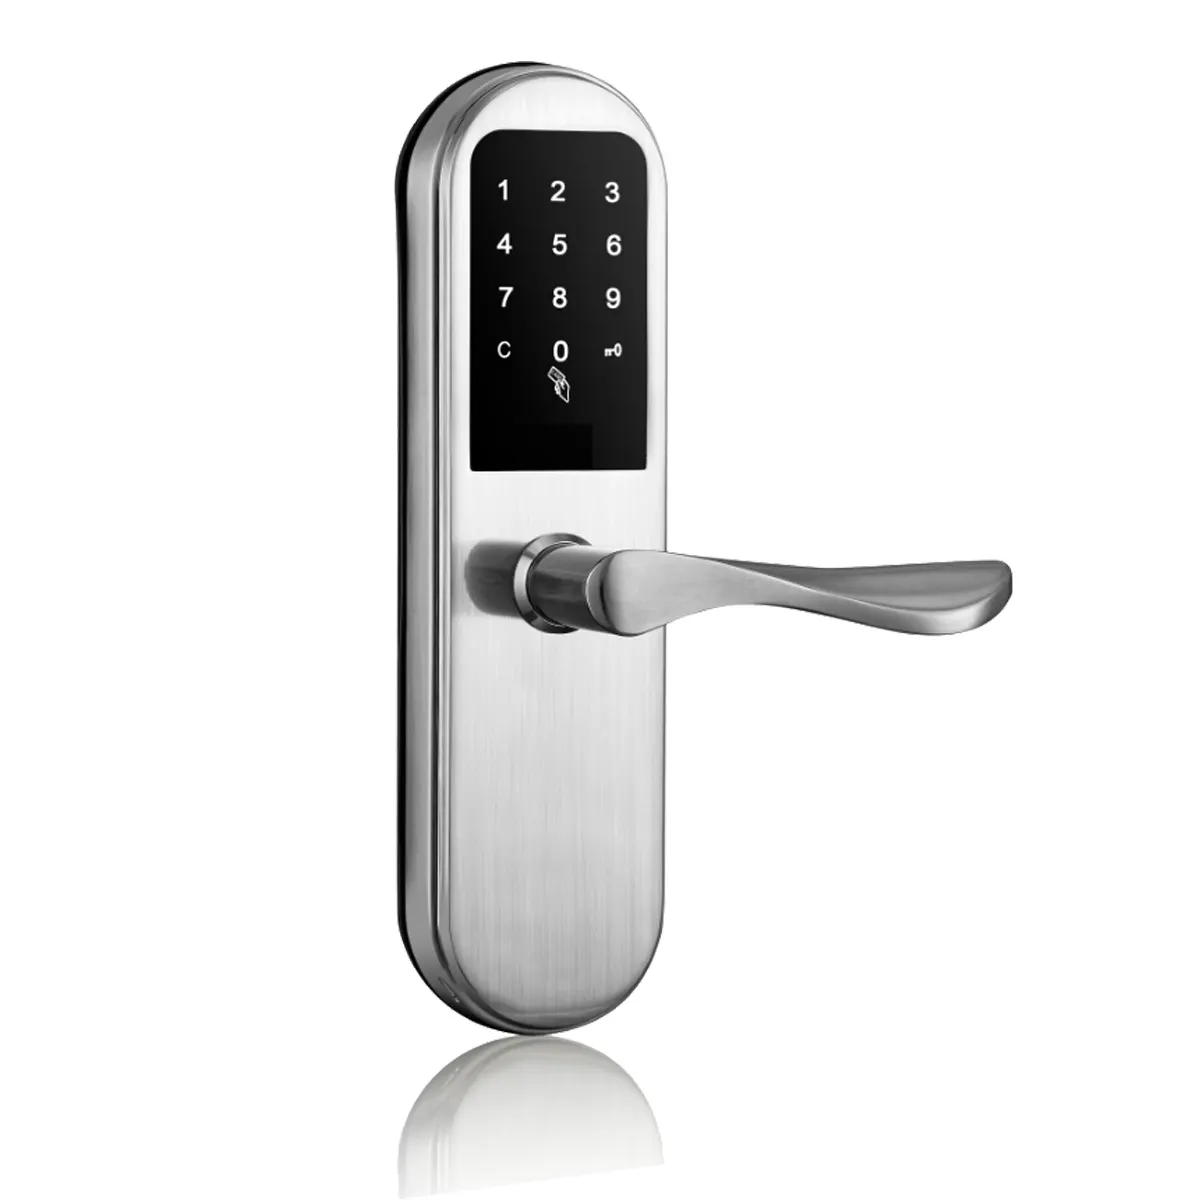 Casa segurança inteligente porta senha fechadura chave eletrônica cartão magnético fechadura da porta